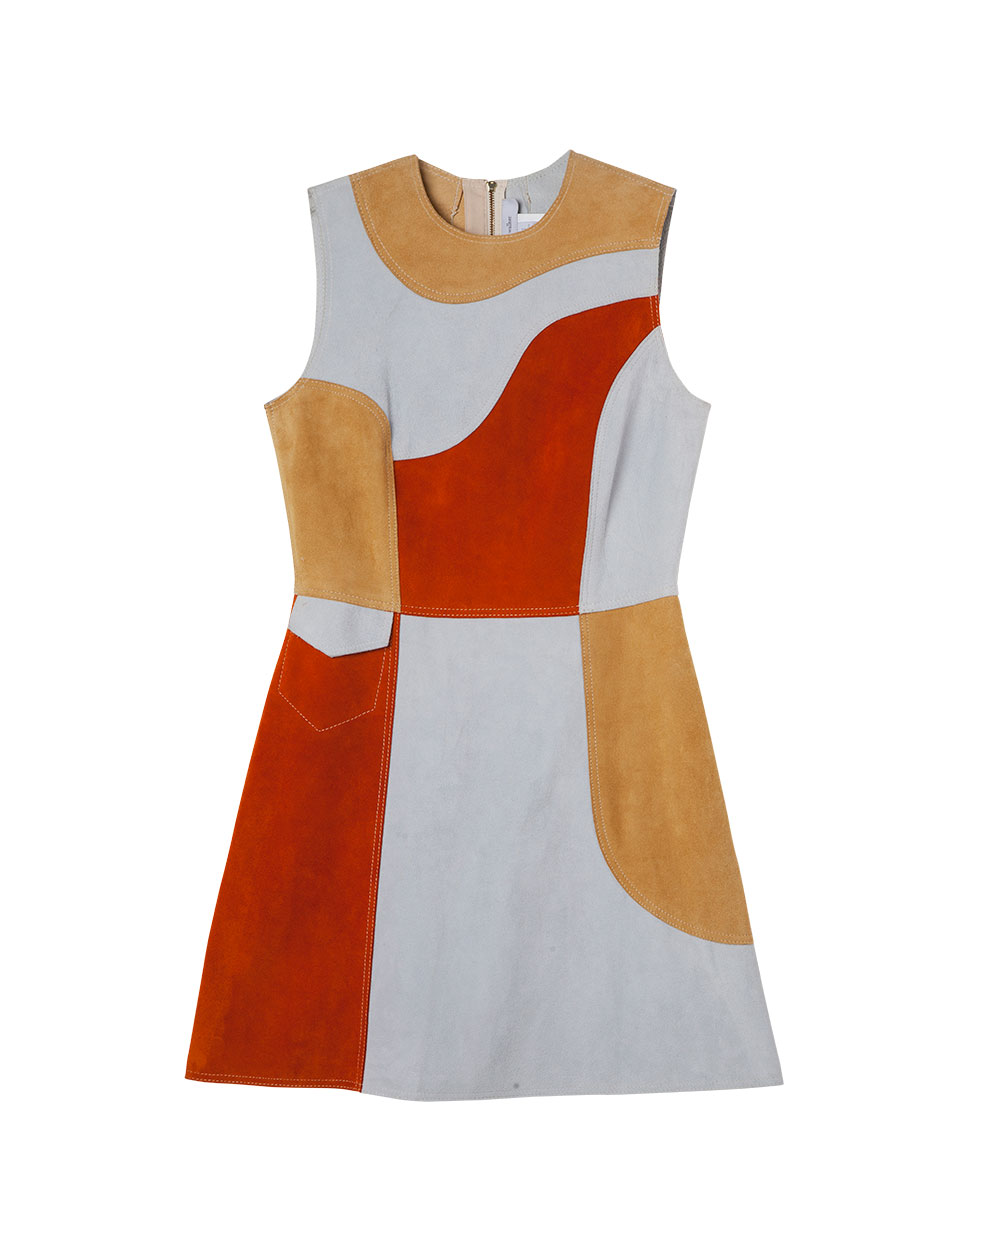 Karen Walker dress, $1655